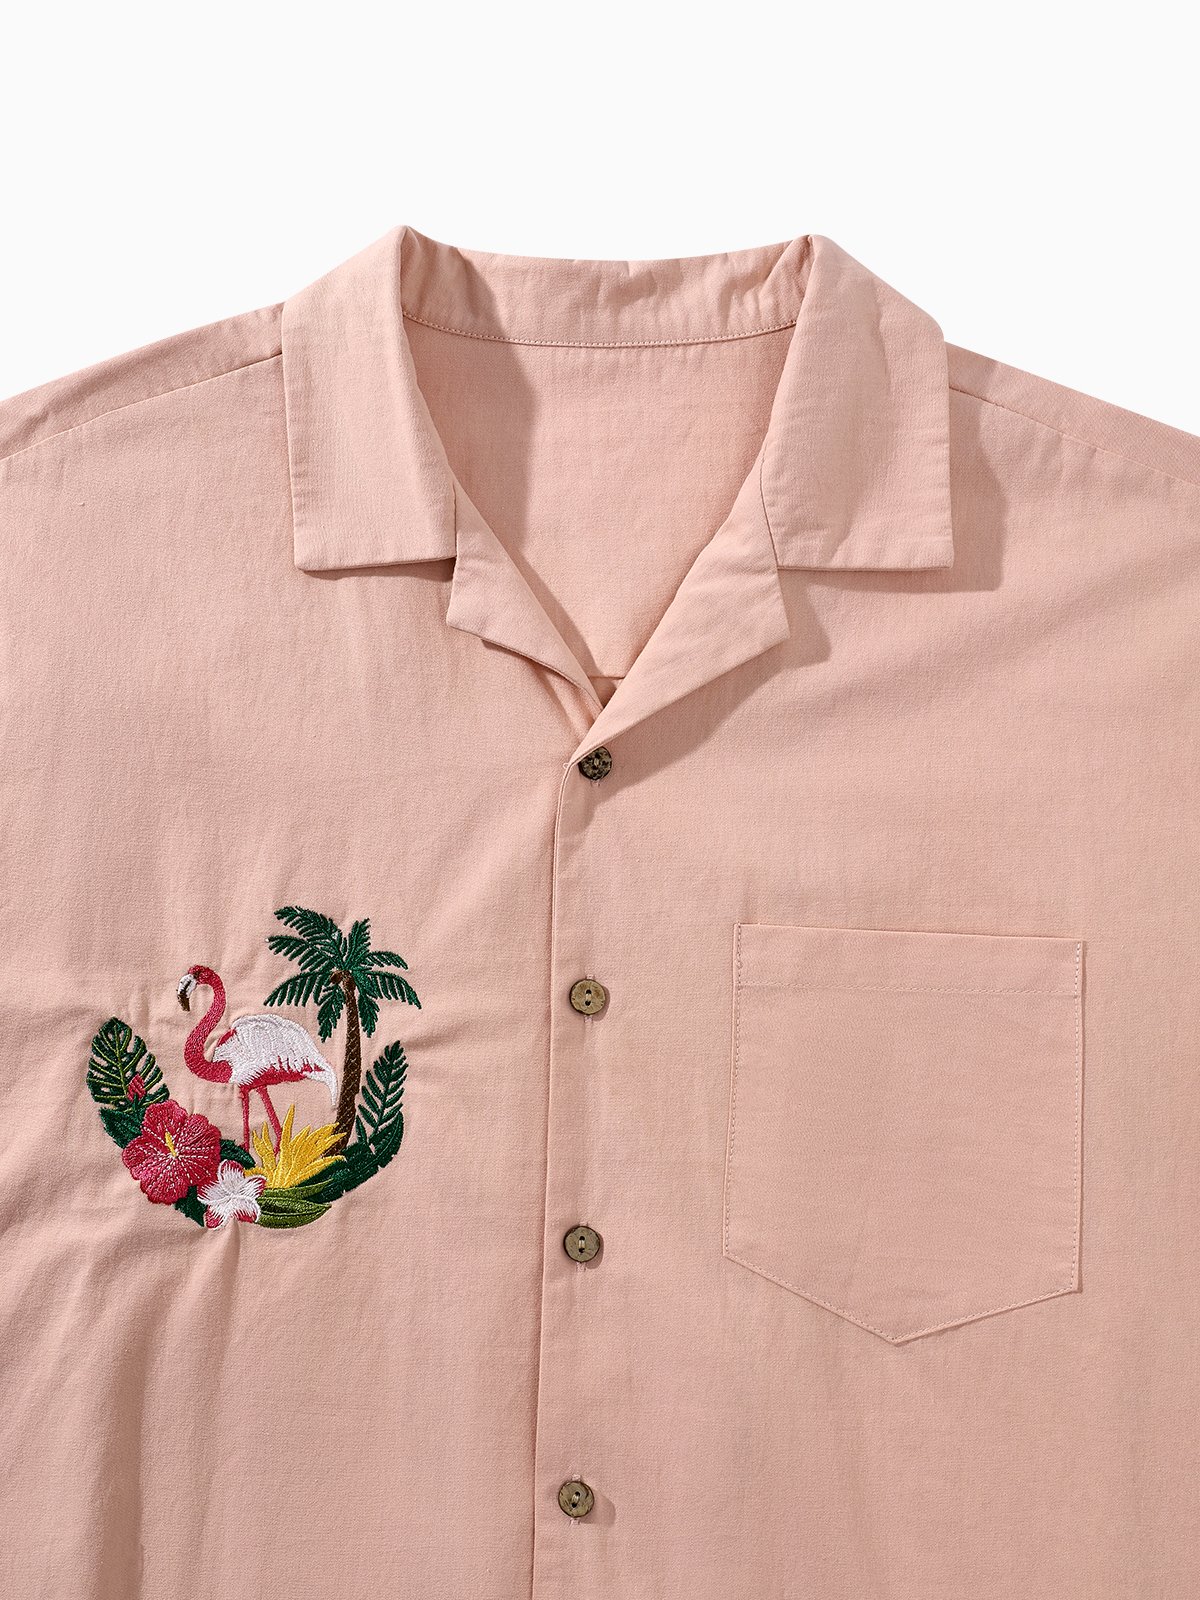 Hardaddy® Cotton Flamingo Embroidered Aloha Shirt